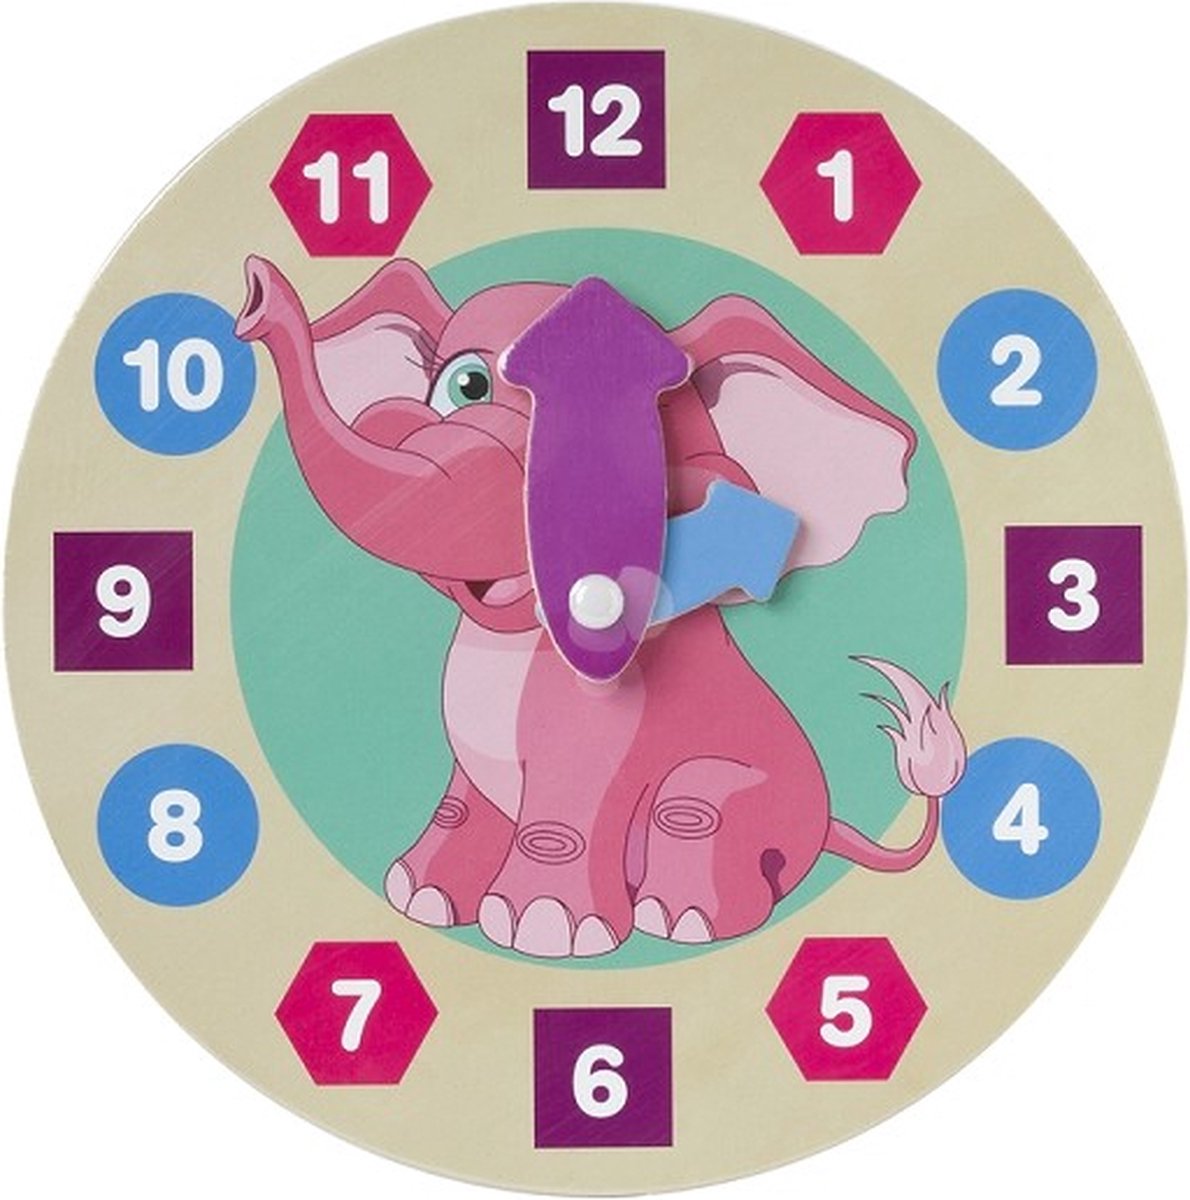 Houten kinderklok - olifantje - speelklok - leerklok leren klokkijken - funcadeau schoencadeautje